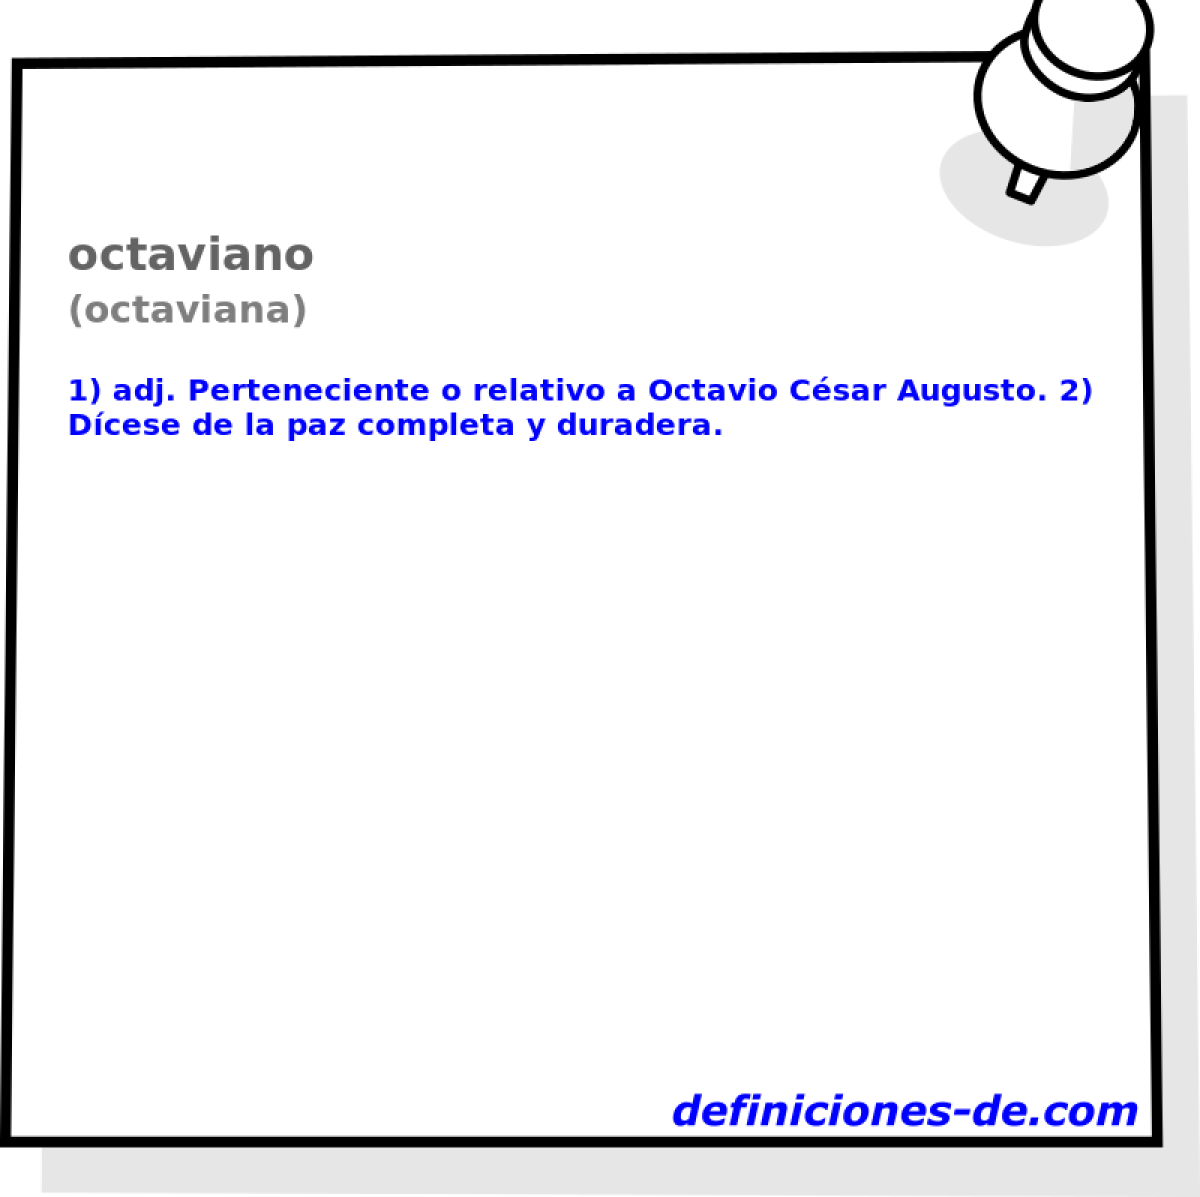 octaviano (octaviana)